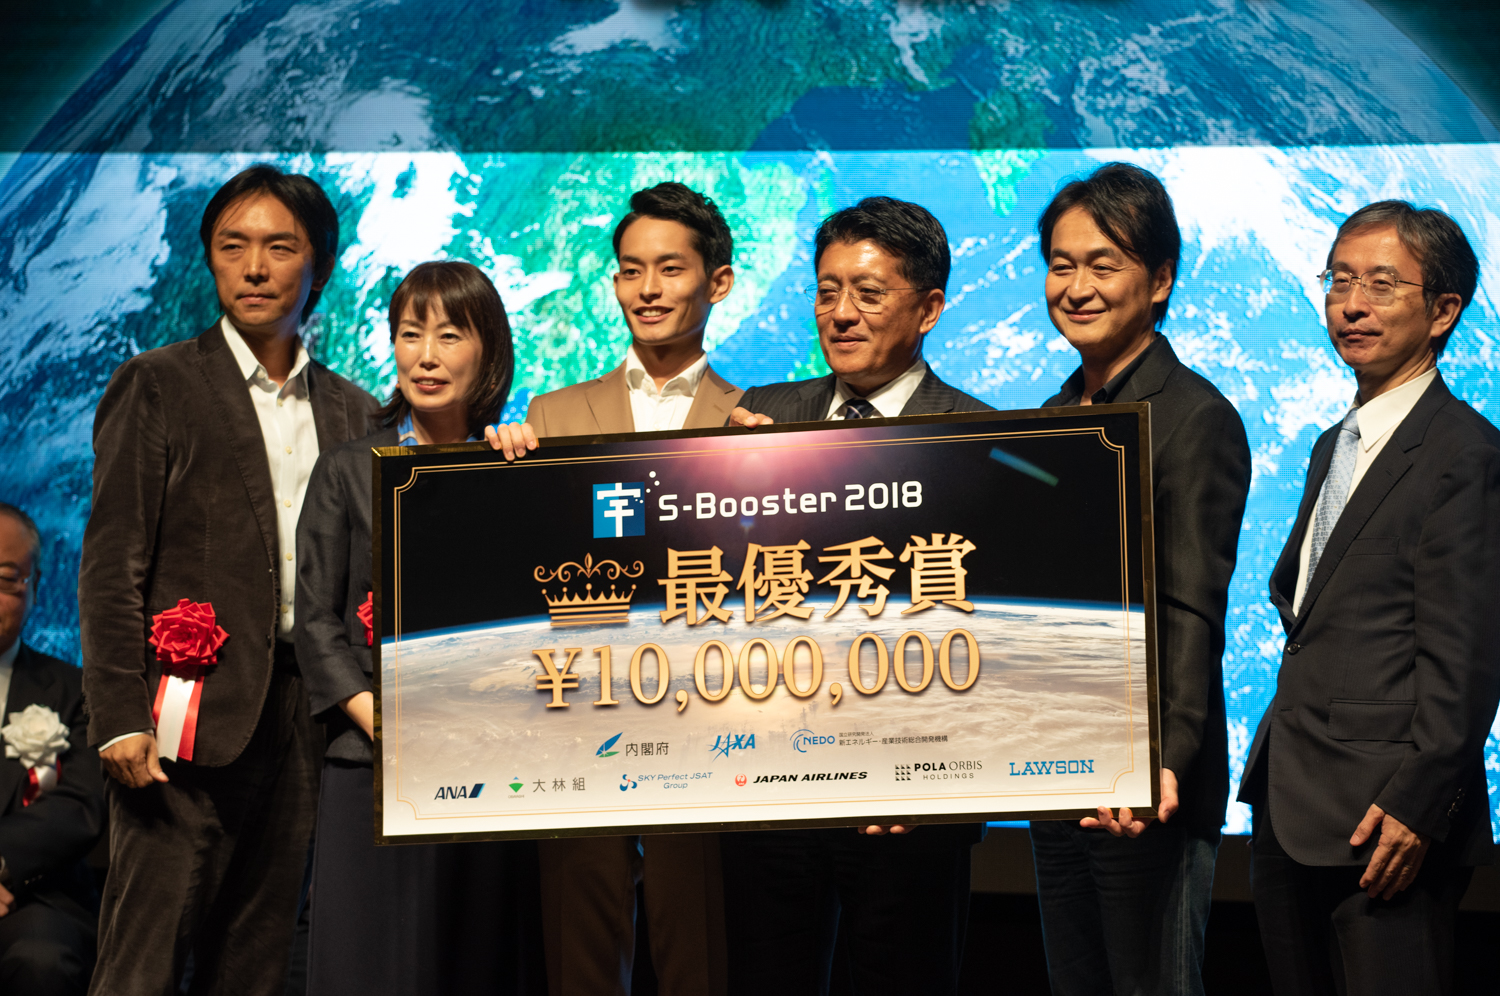 2017年から始まった、一般から広くアイデアを募る宇宙ビジネスコンテスト「S-Booster」。最大1000万円の賞金が出る